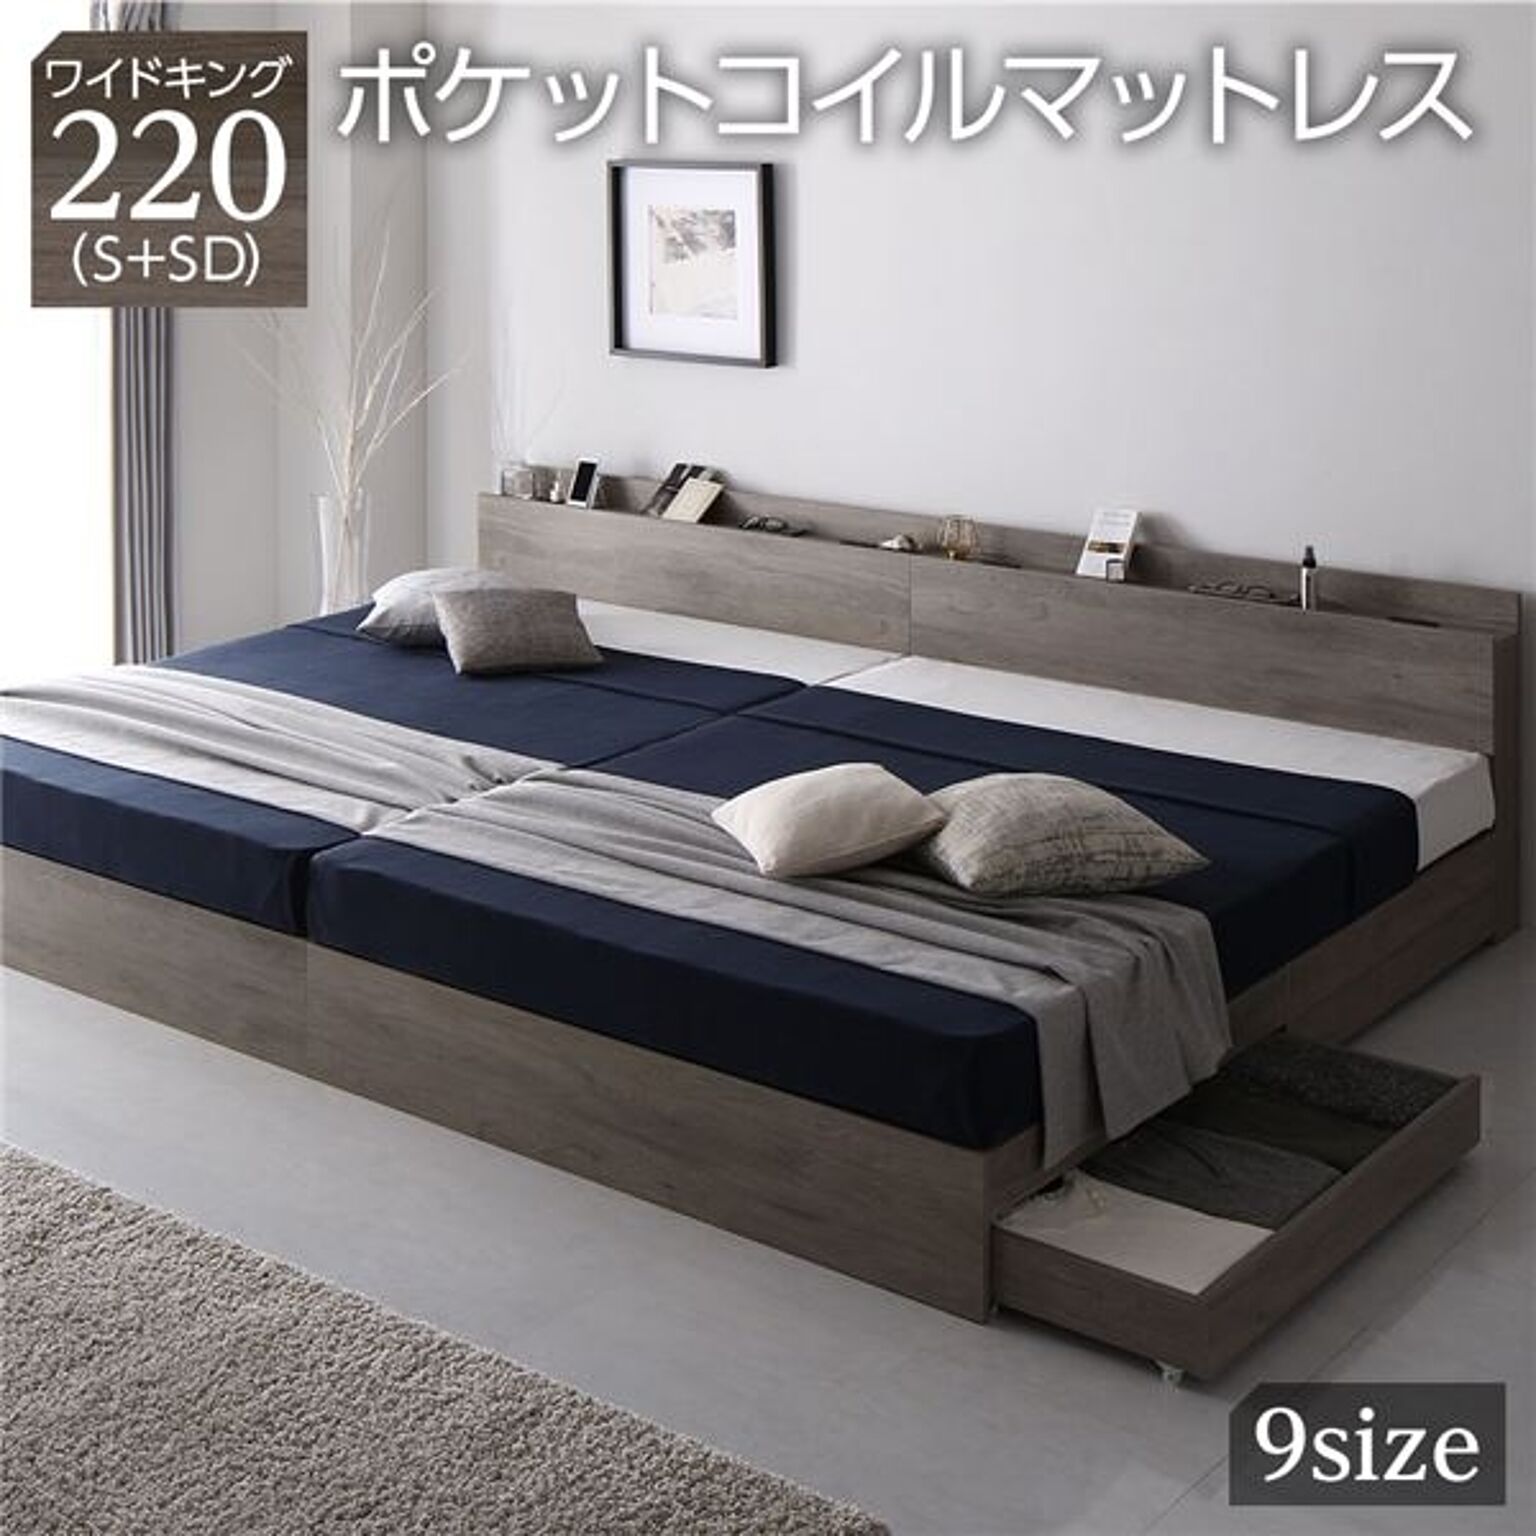 ベッド 収納ベッド ワイドキング220S+SD シングル+セミダブル ポケット